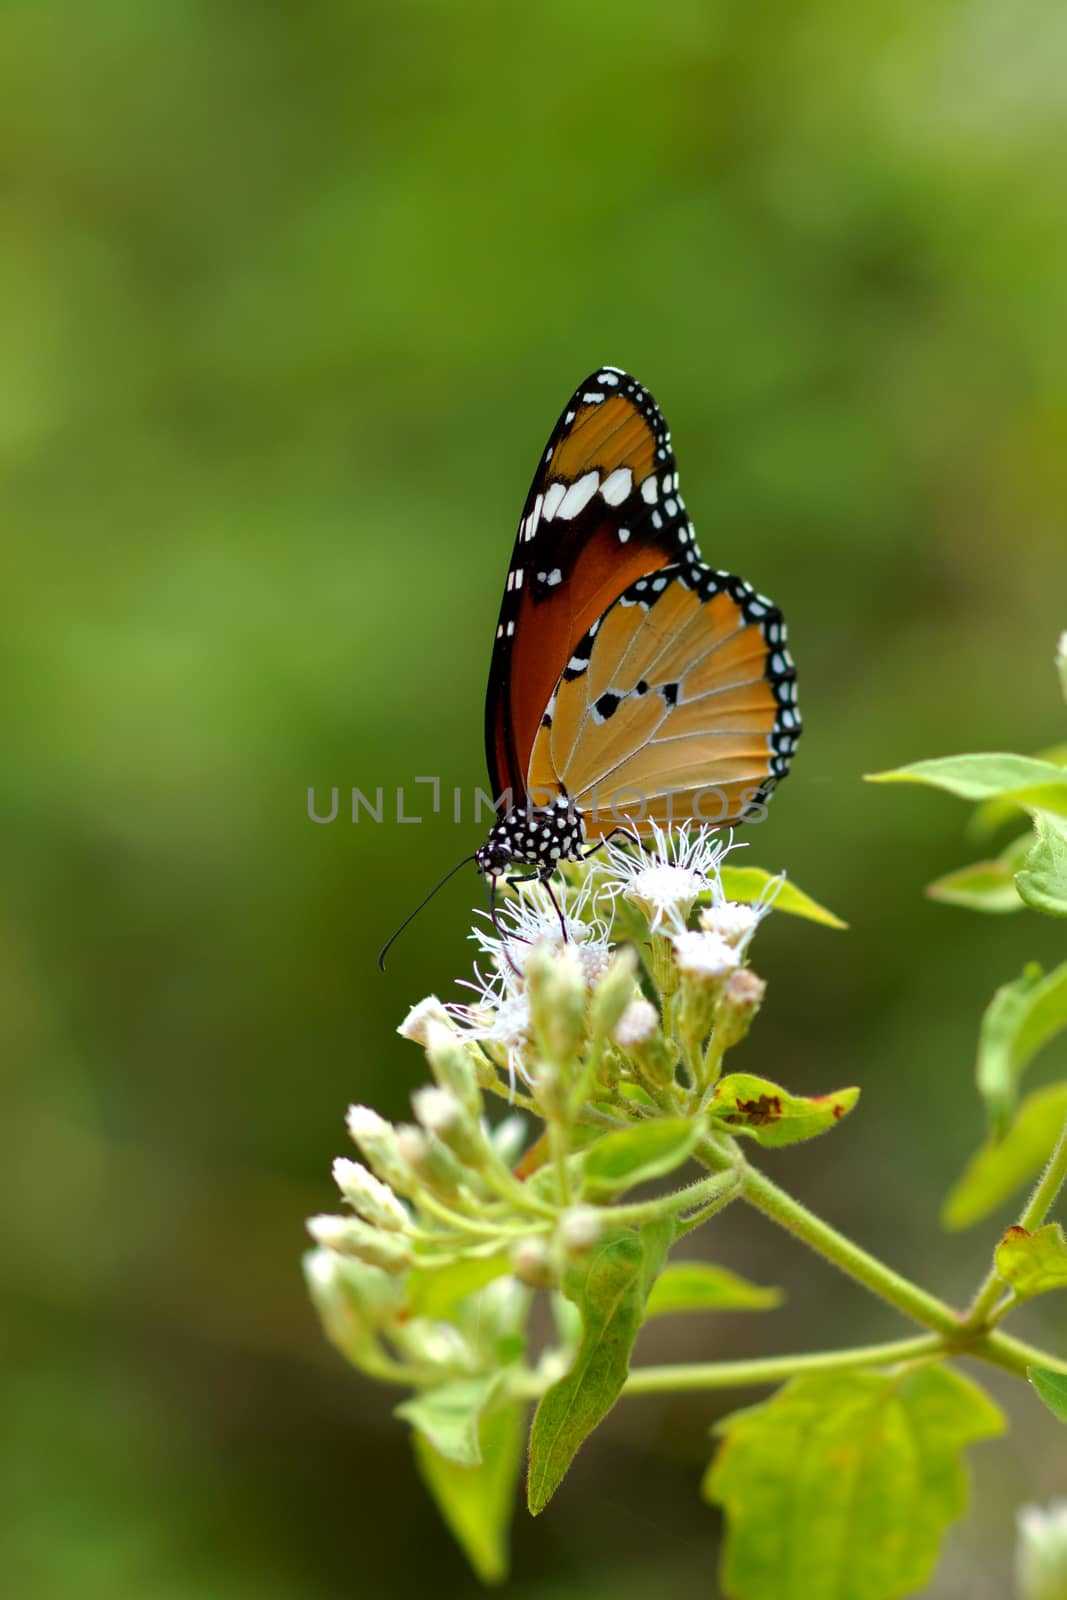 Orange butterfly on flower. (Cethosia cyane) by Noppharat_th